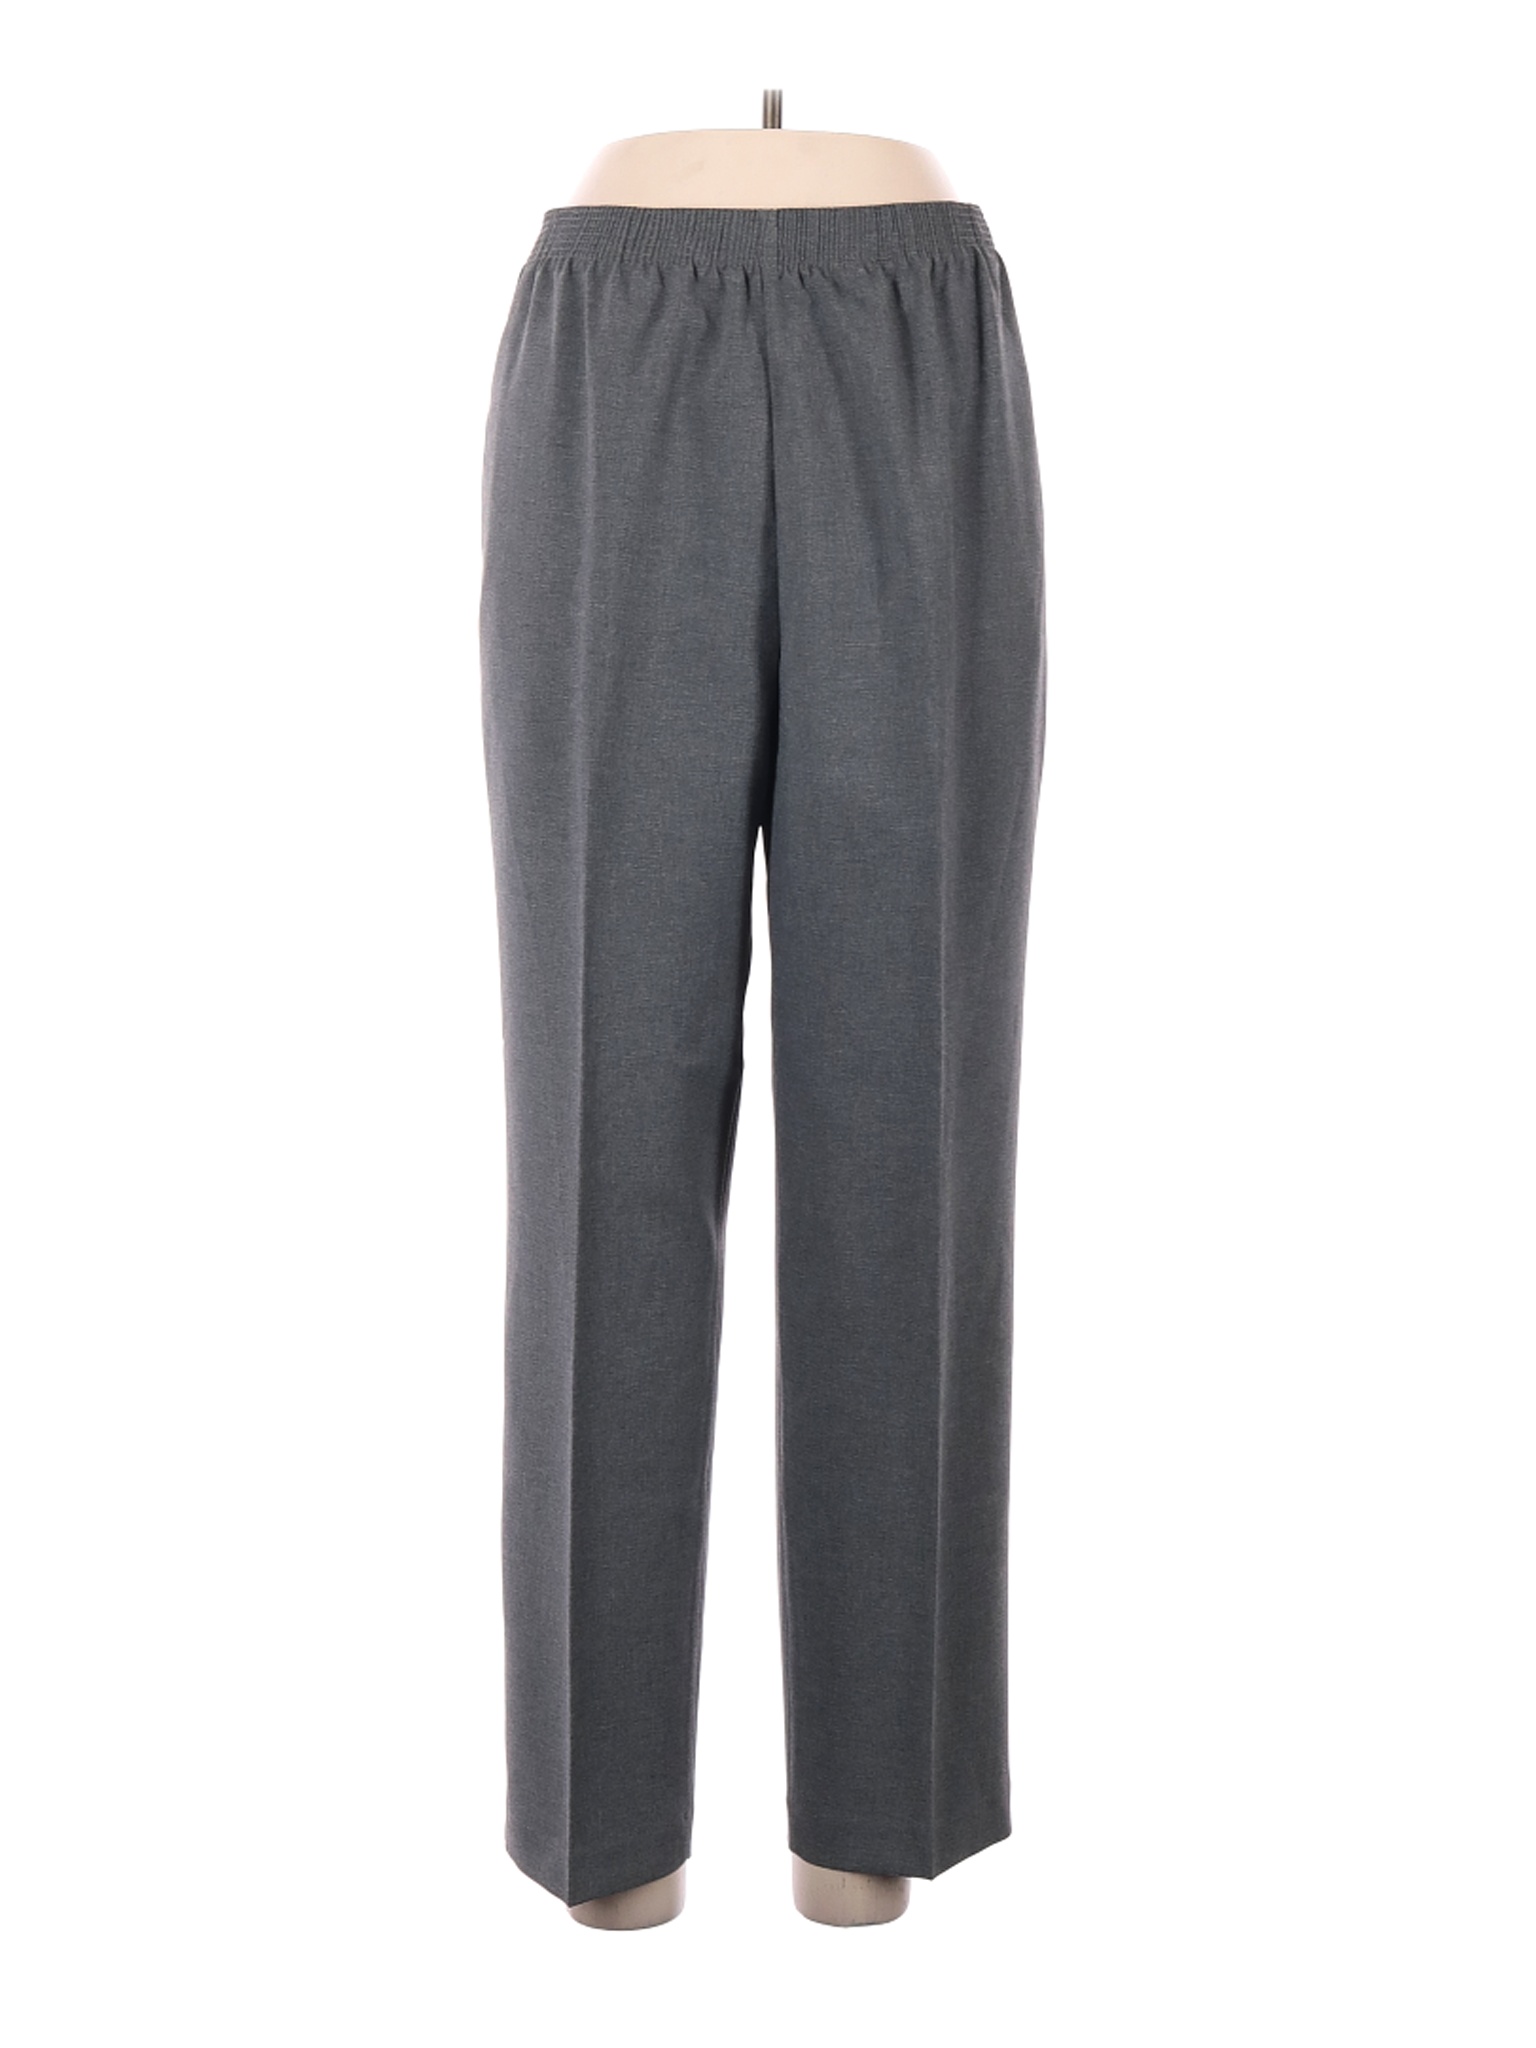 NWT Alia Women Gray Casual Pants 12 | eBay